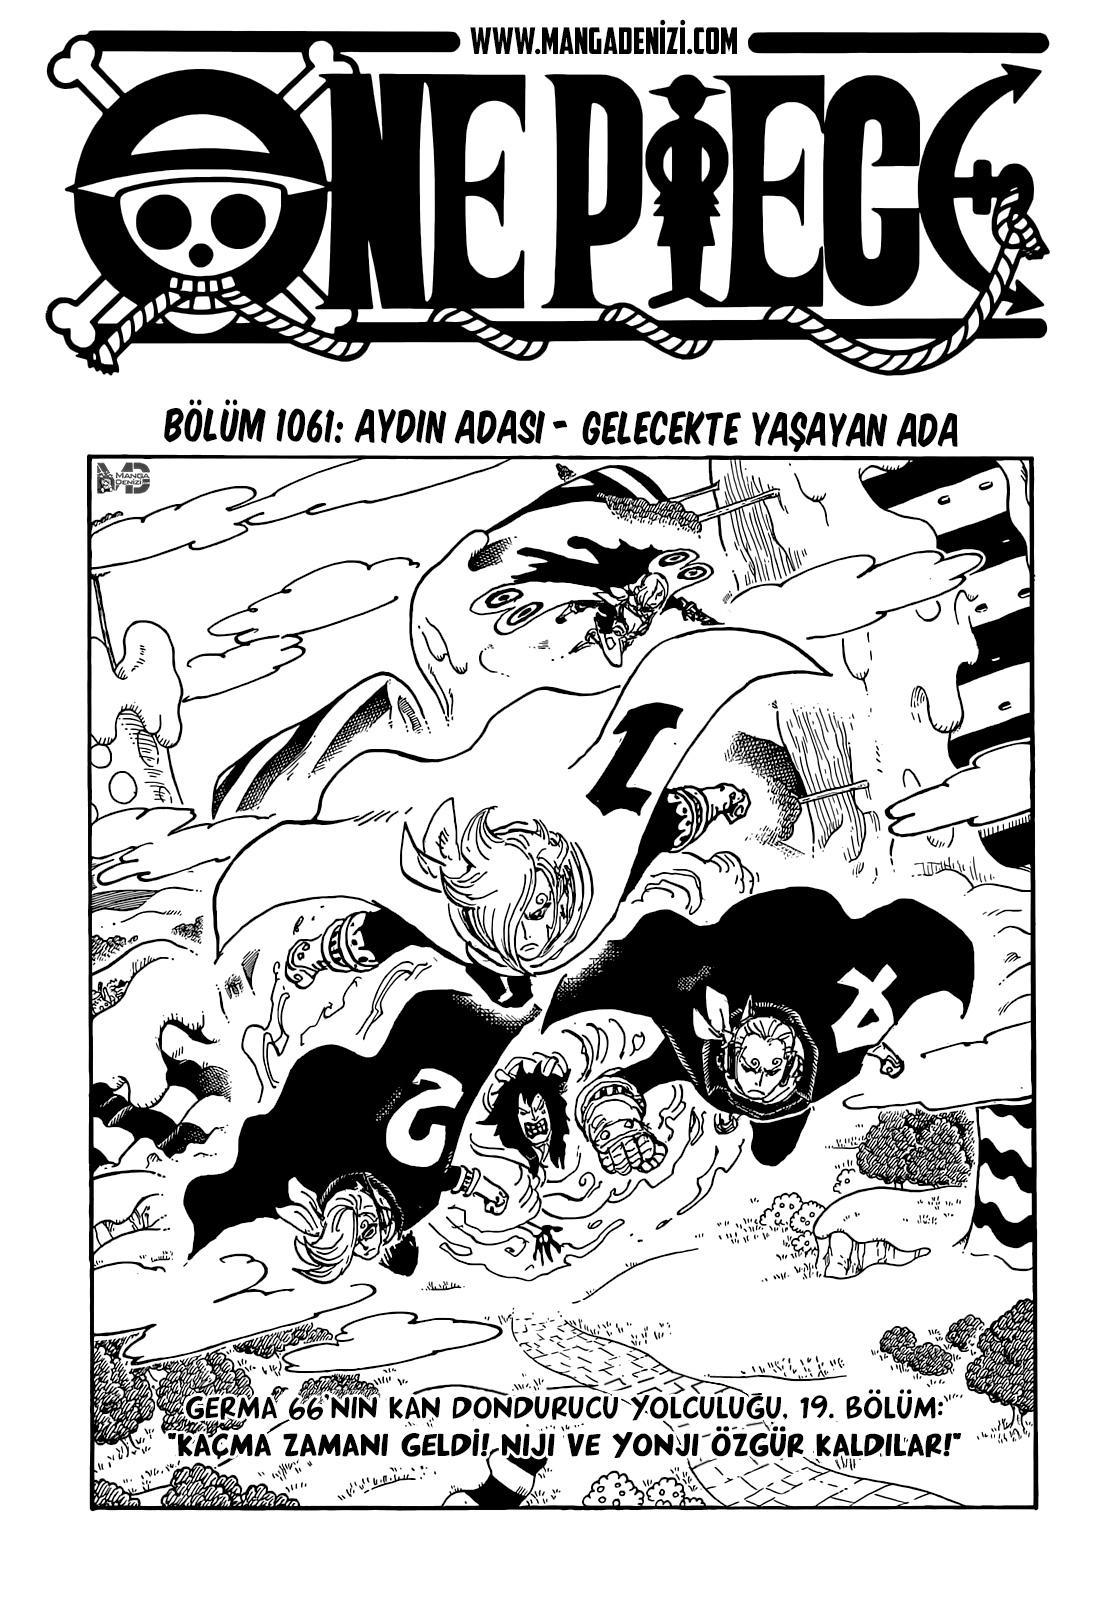 One Piece mangasının 1061 bölümünün 2. sayfasını okuyorsunuz.